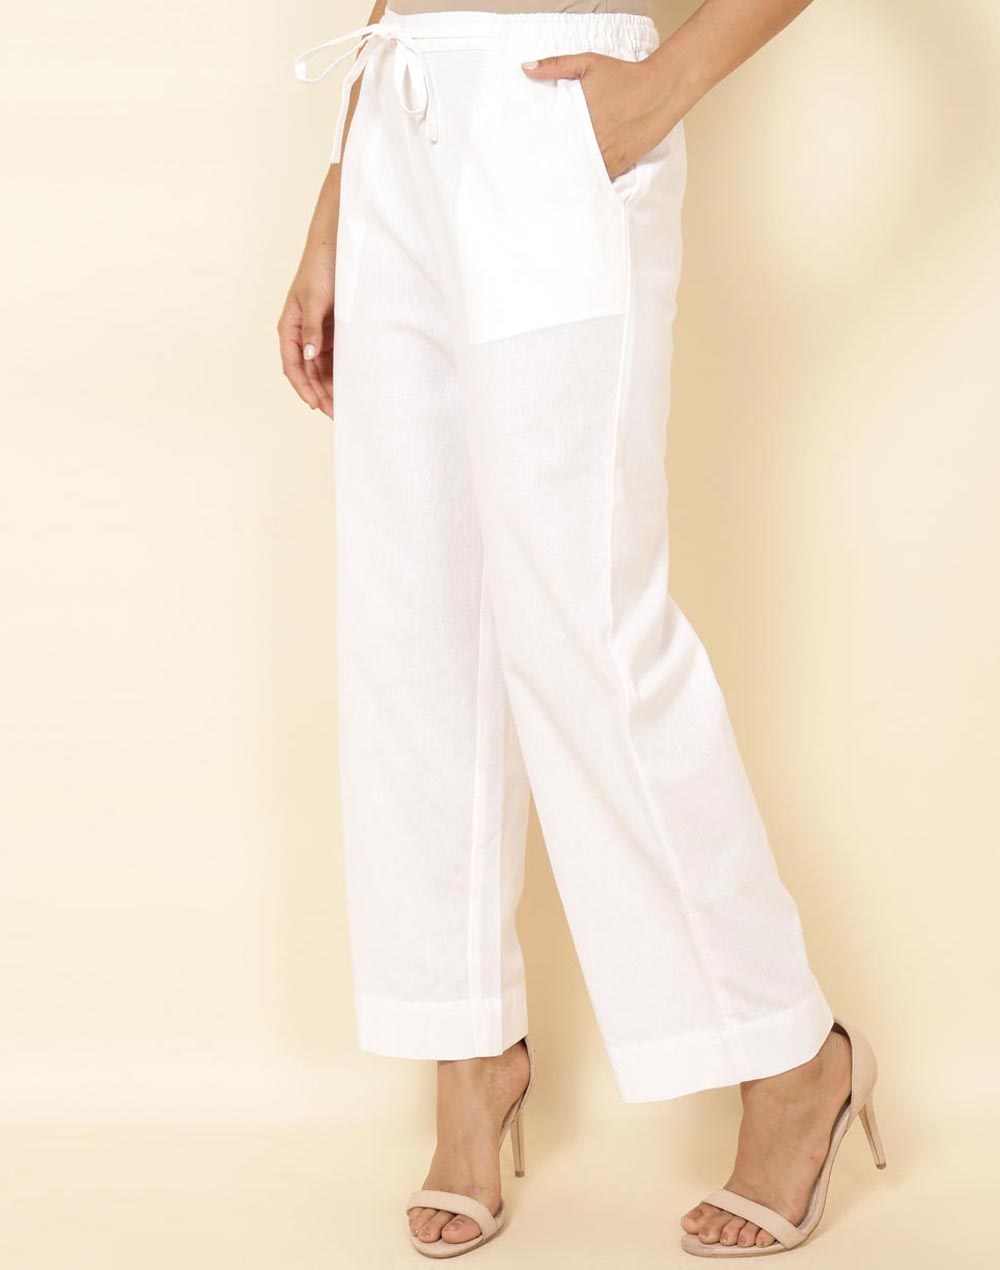 Buy Black Cotton Blend Full Length Pant Formal for Women Online at